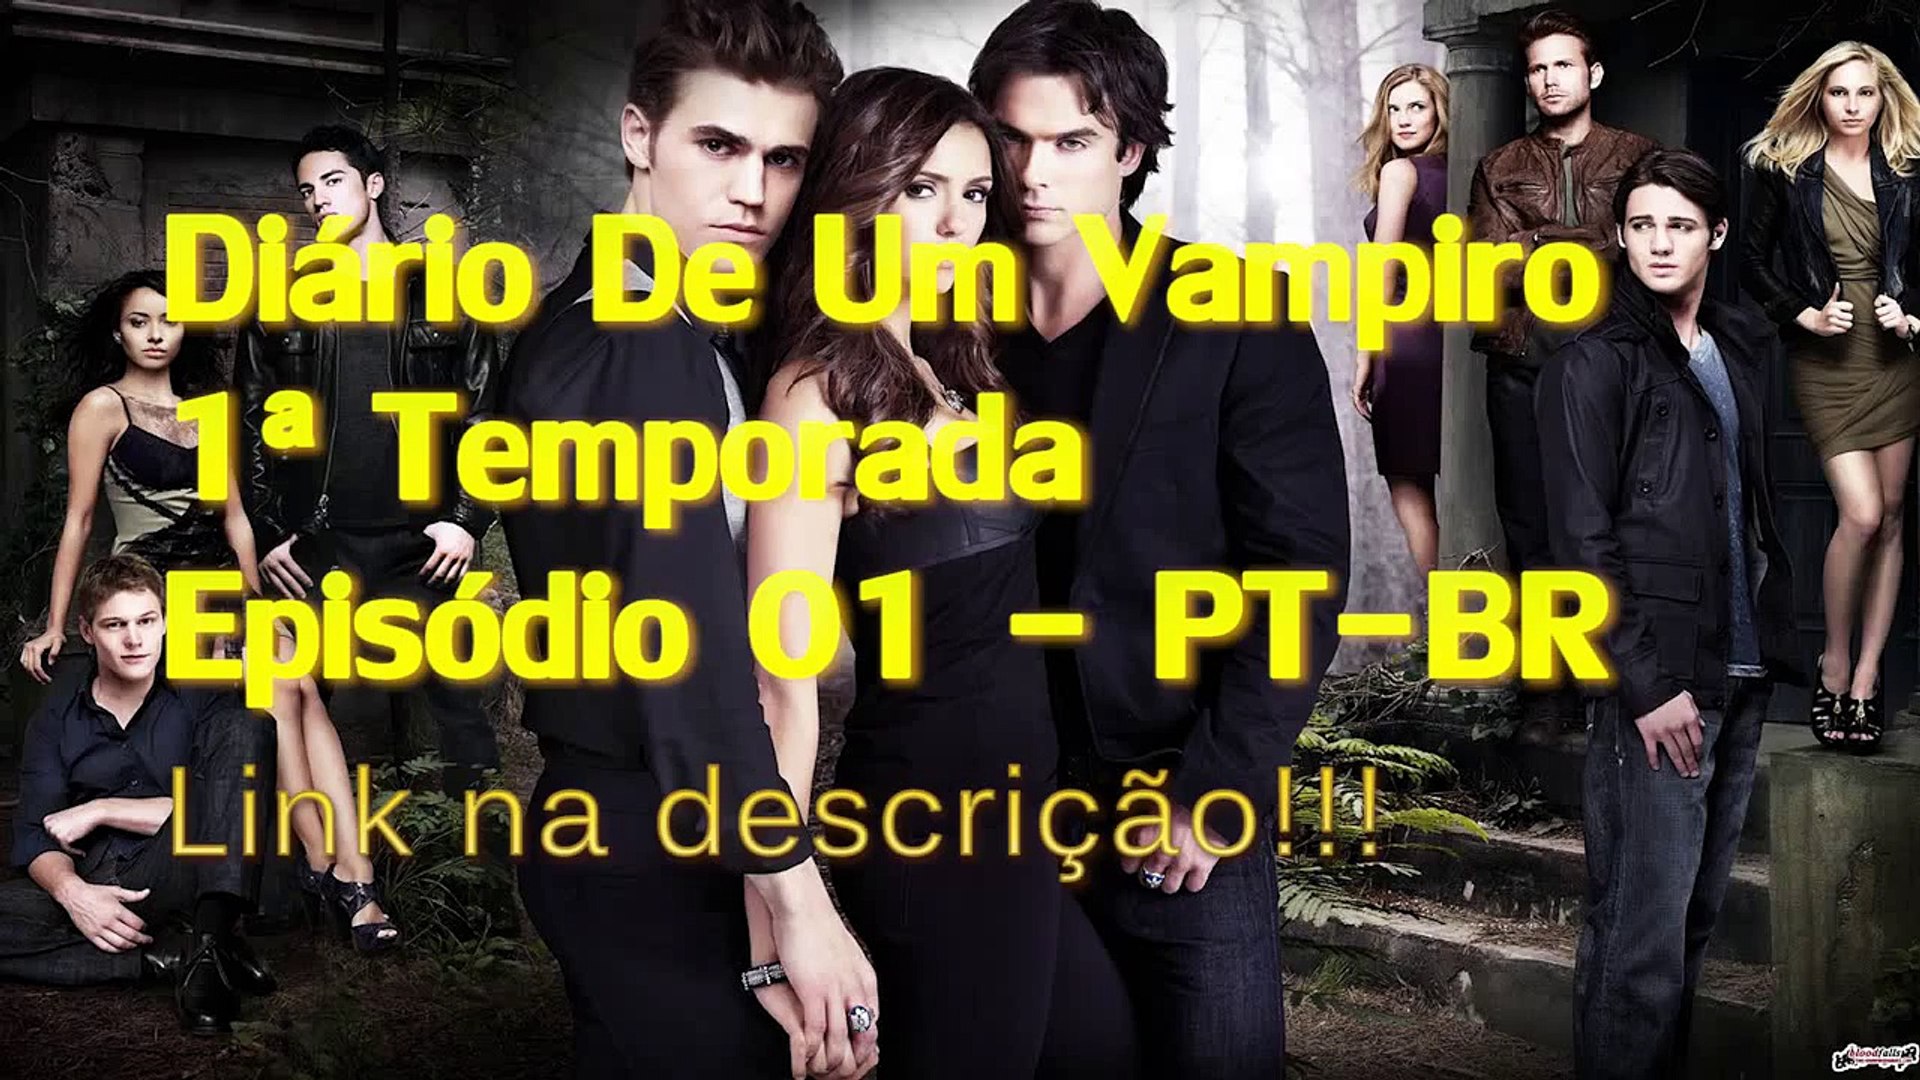 Diario um vampiro 1 temporada dublado